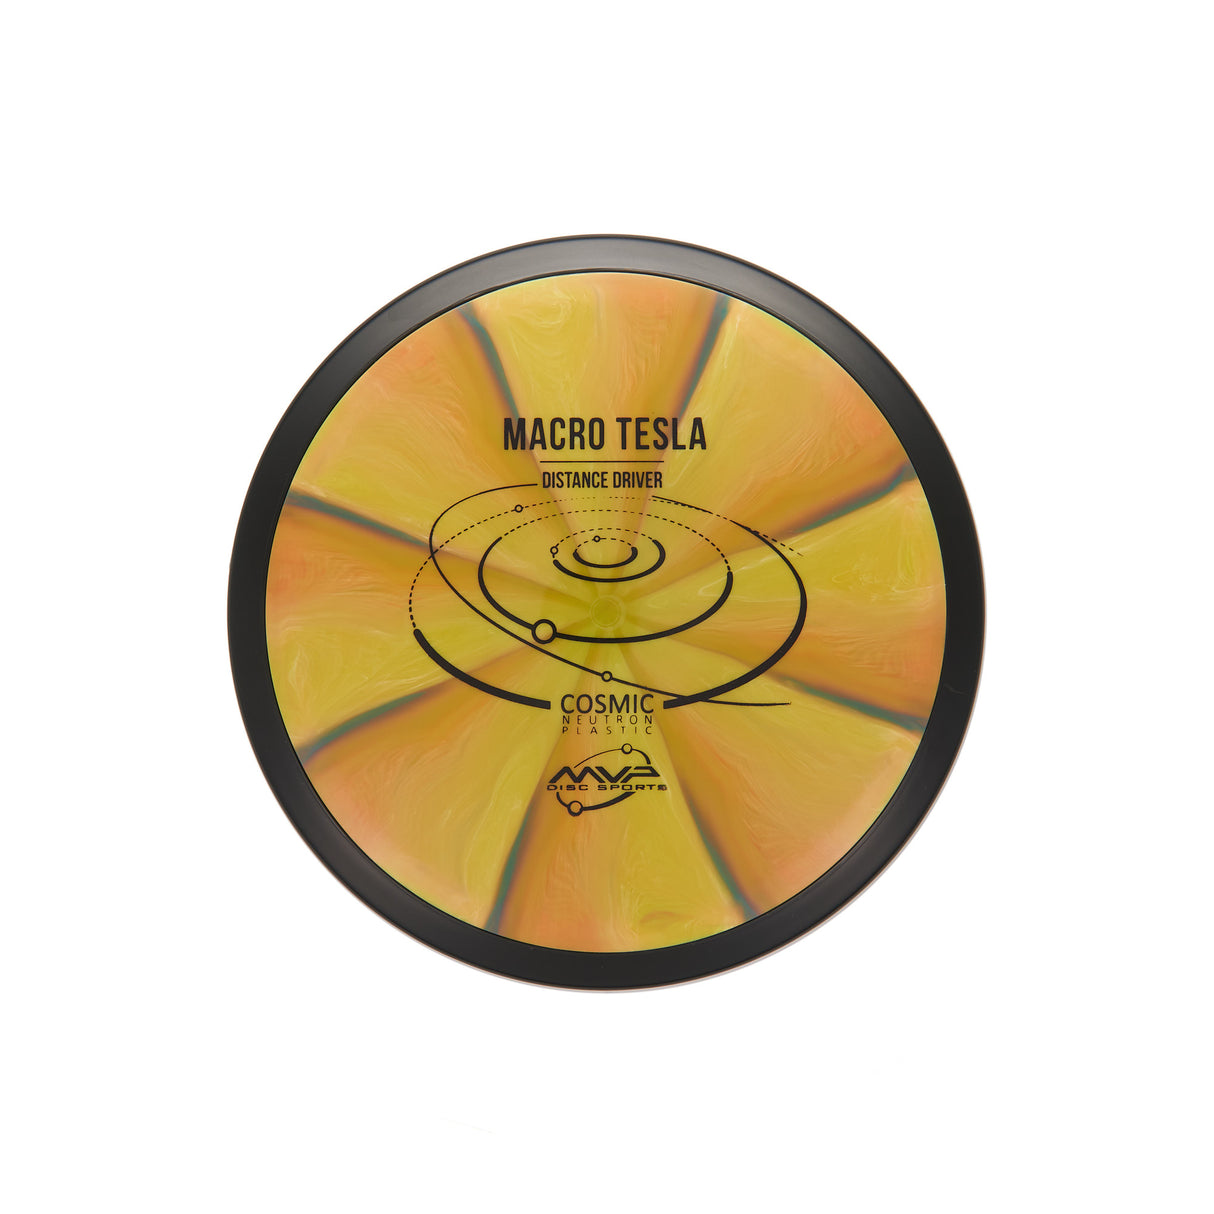 MVP Macro Tesla - Cosmic Neutron 81g | Style 0006